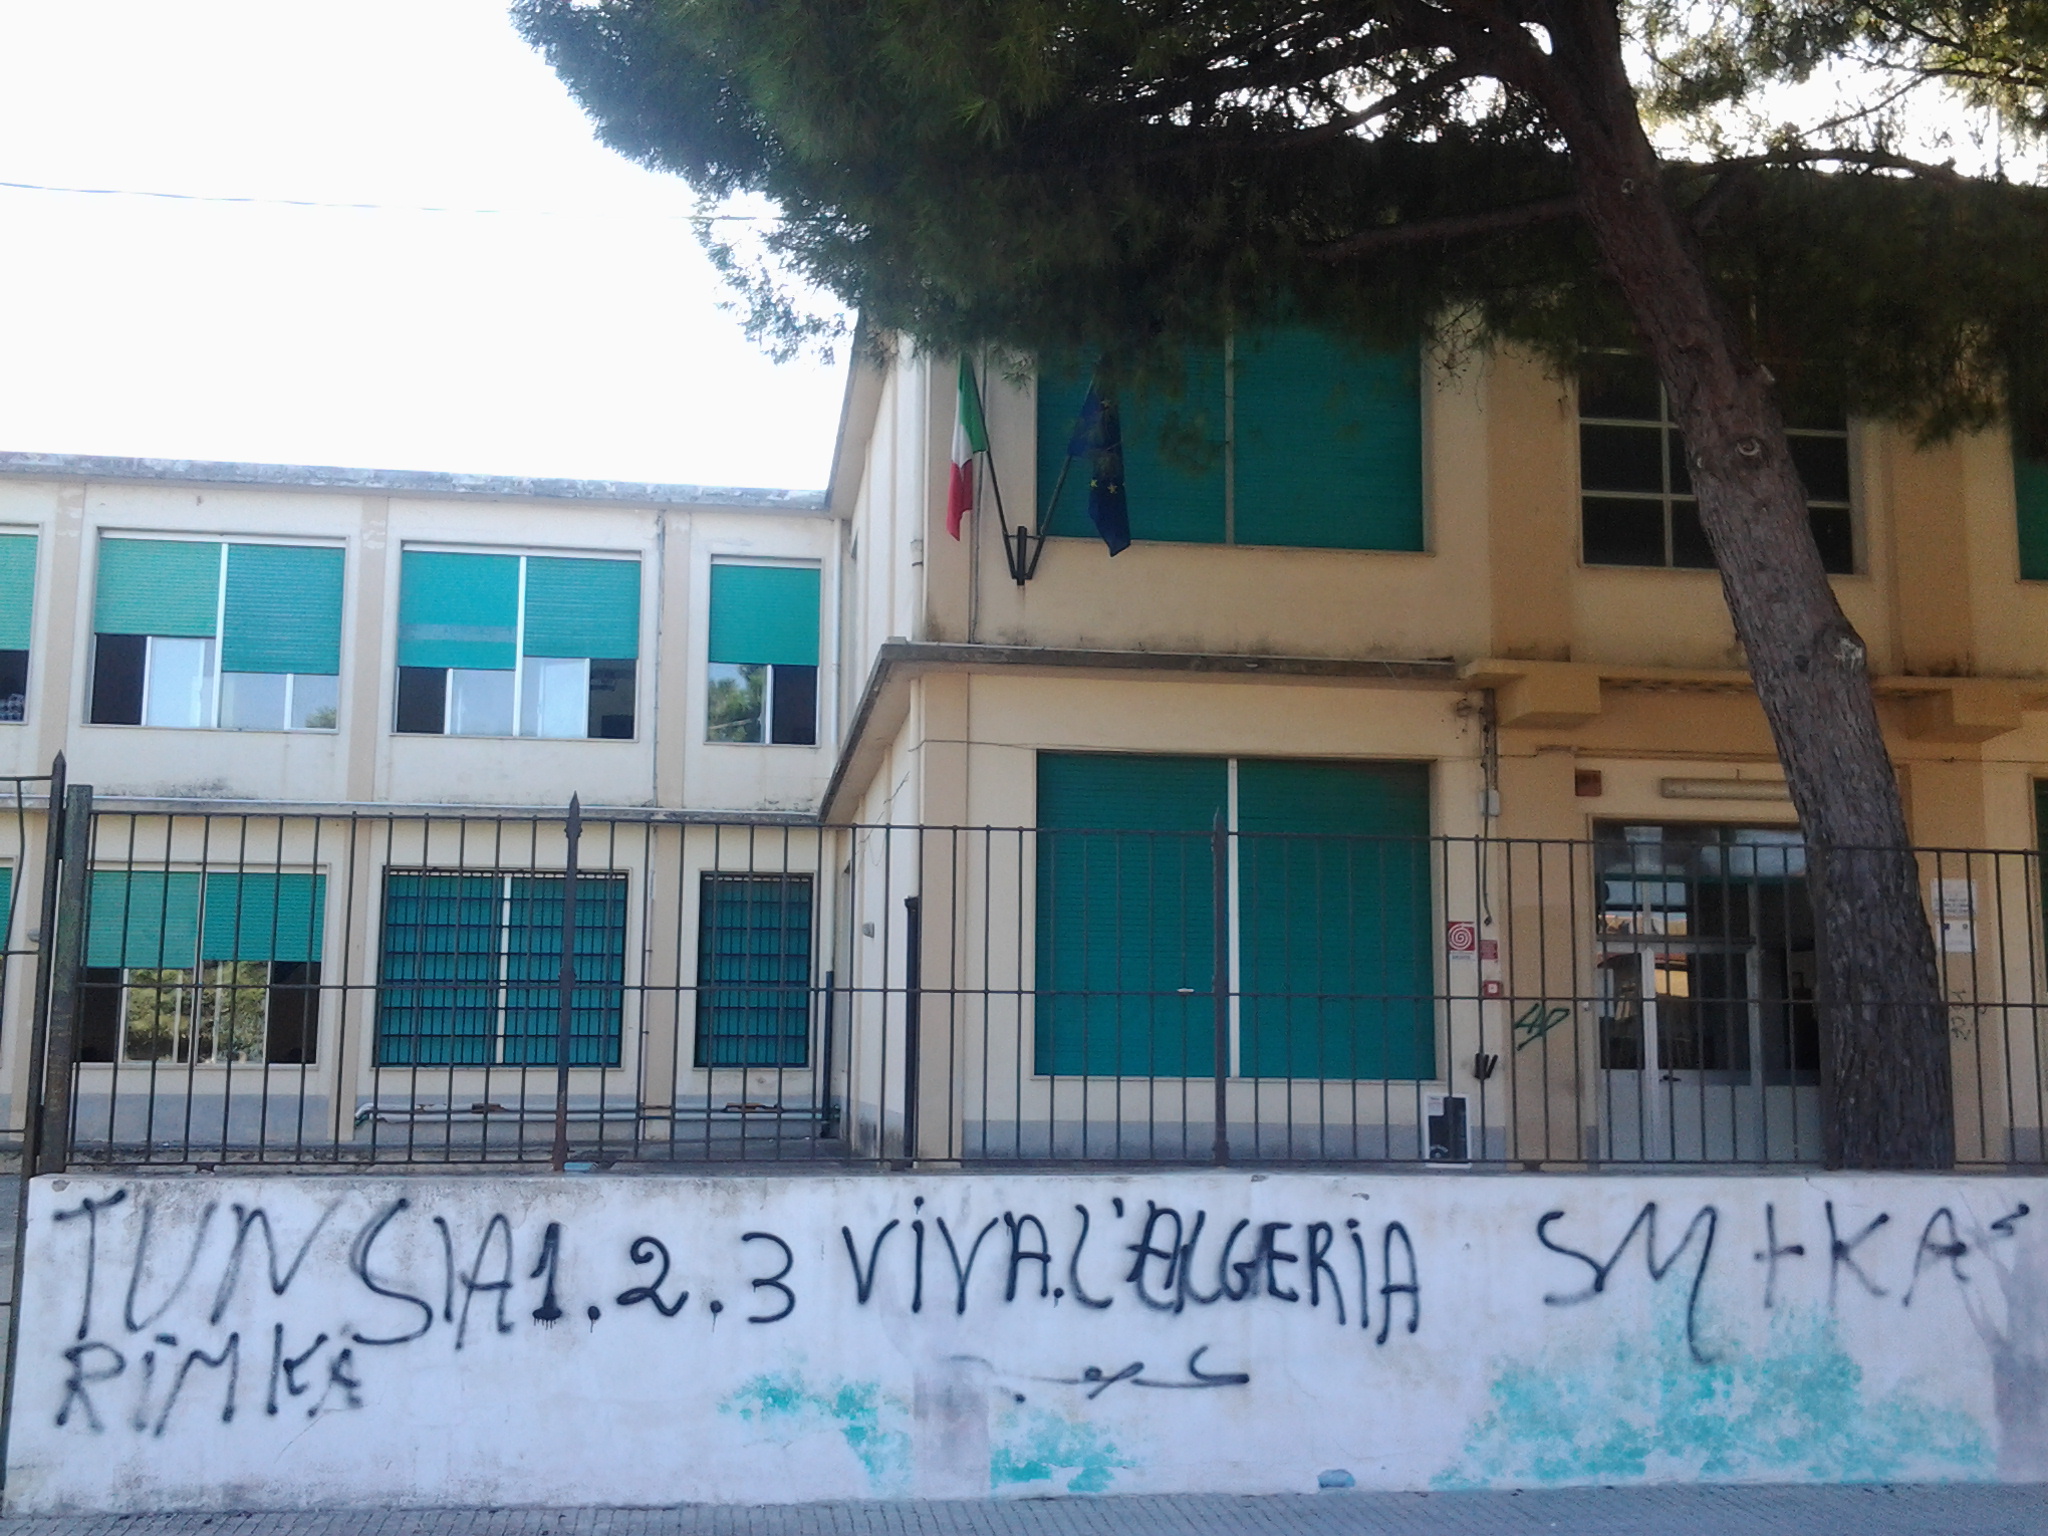  Imbrattati i muri di un edificio scolastico, Fare Ambiente attacca: “Servono controllo ed educazione”